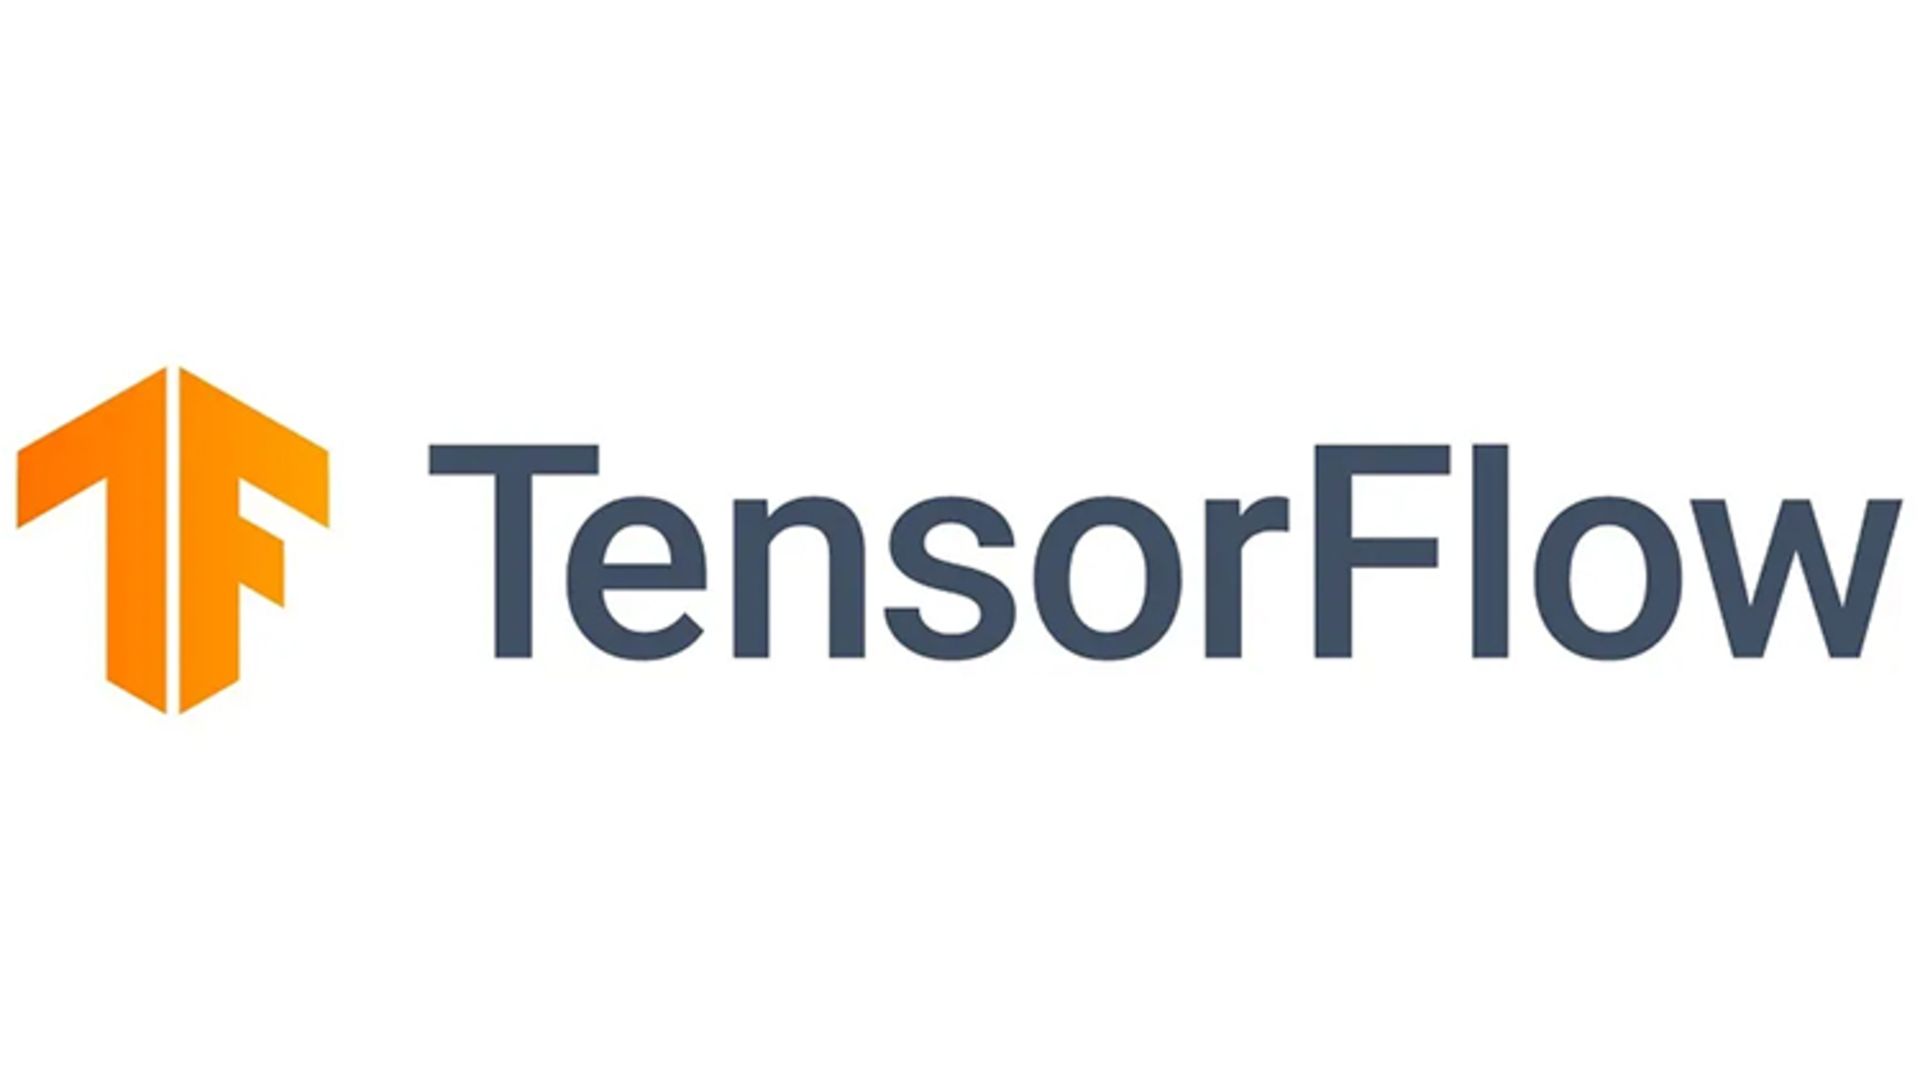 مرجع متخصصين ايران جزوه رايگانخانه tensorflow 